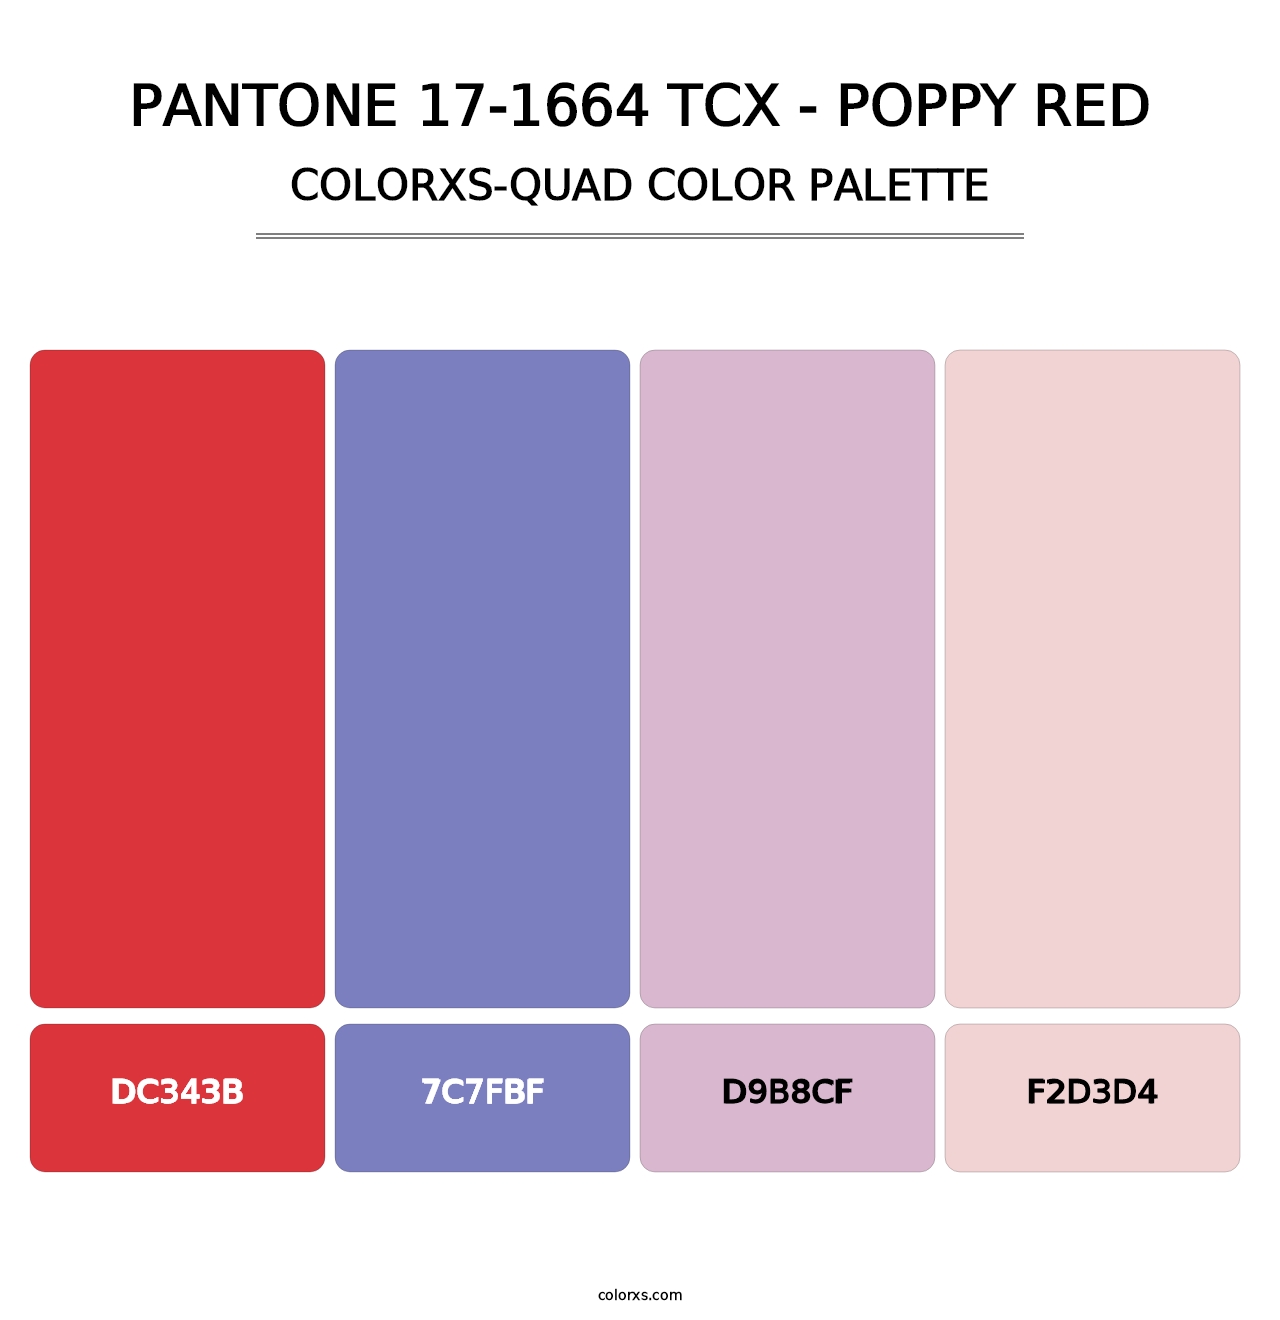 PANTONE 17-1664 TCX - Poppy Red - Colorxs Quad Palette